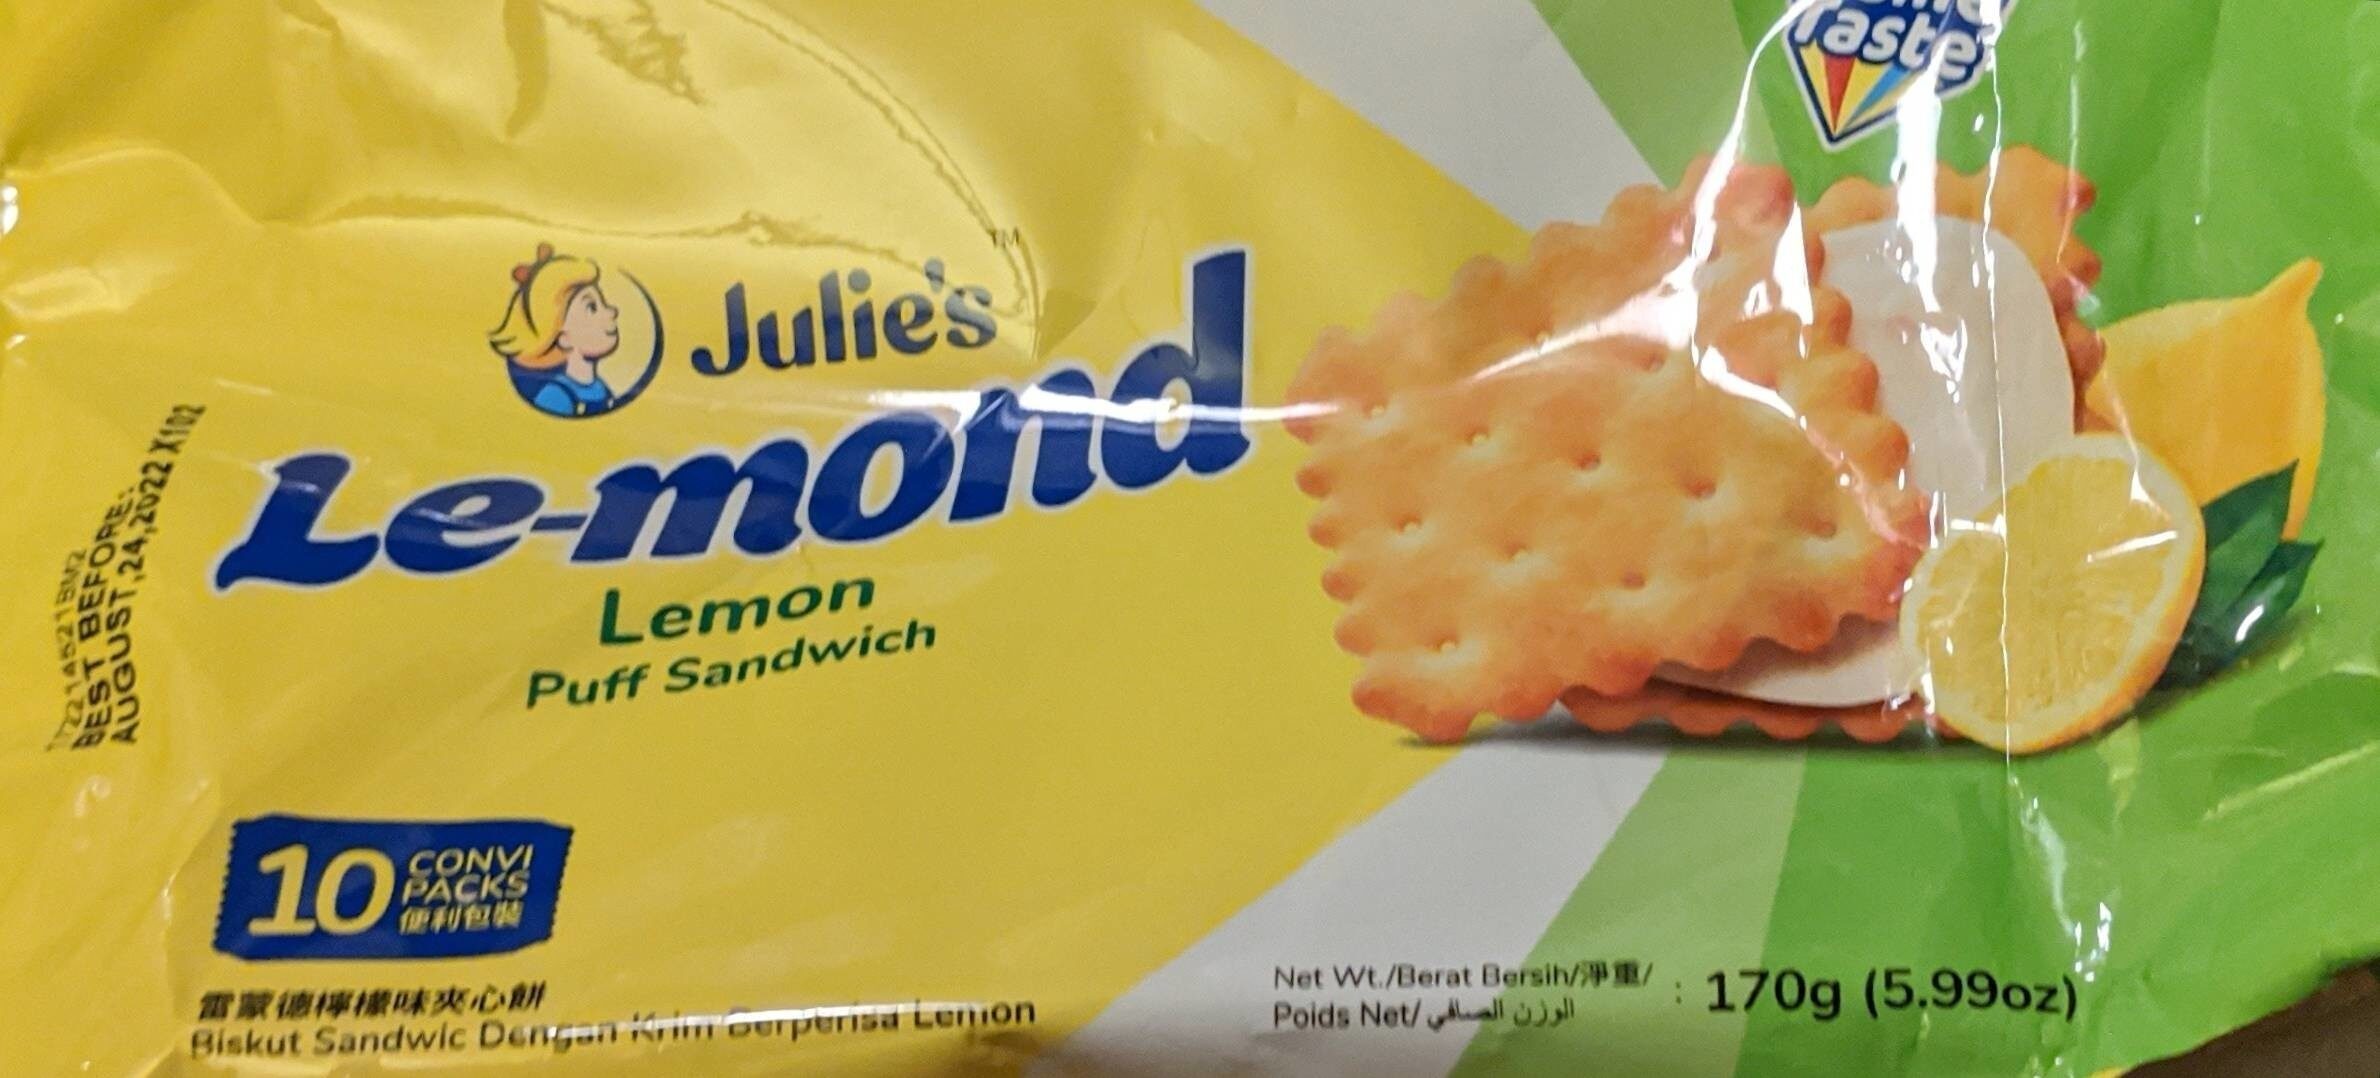 Lemon Puff sandwich - Product - fr